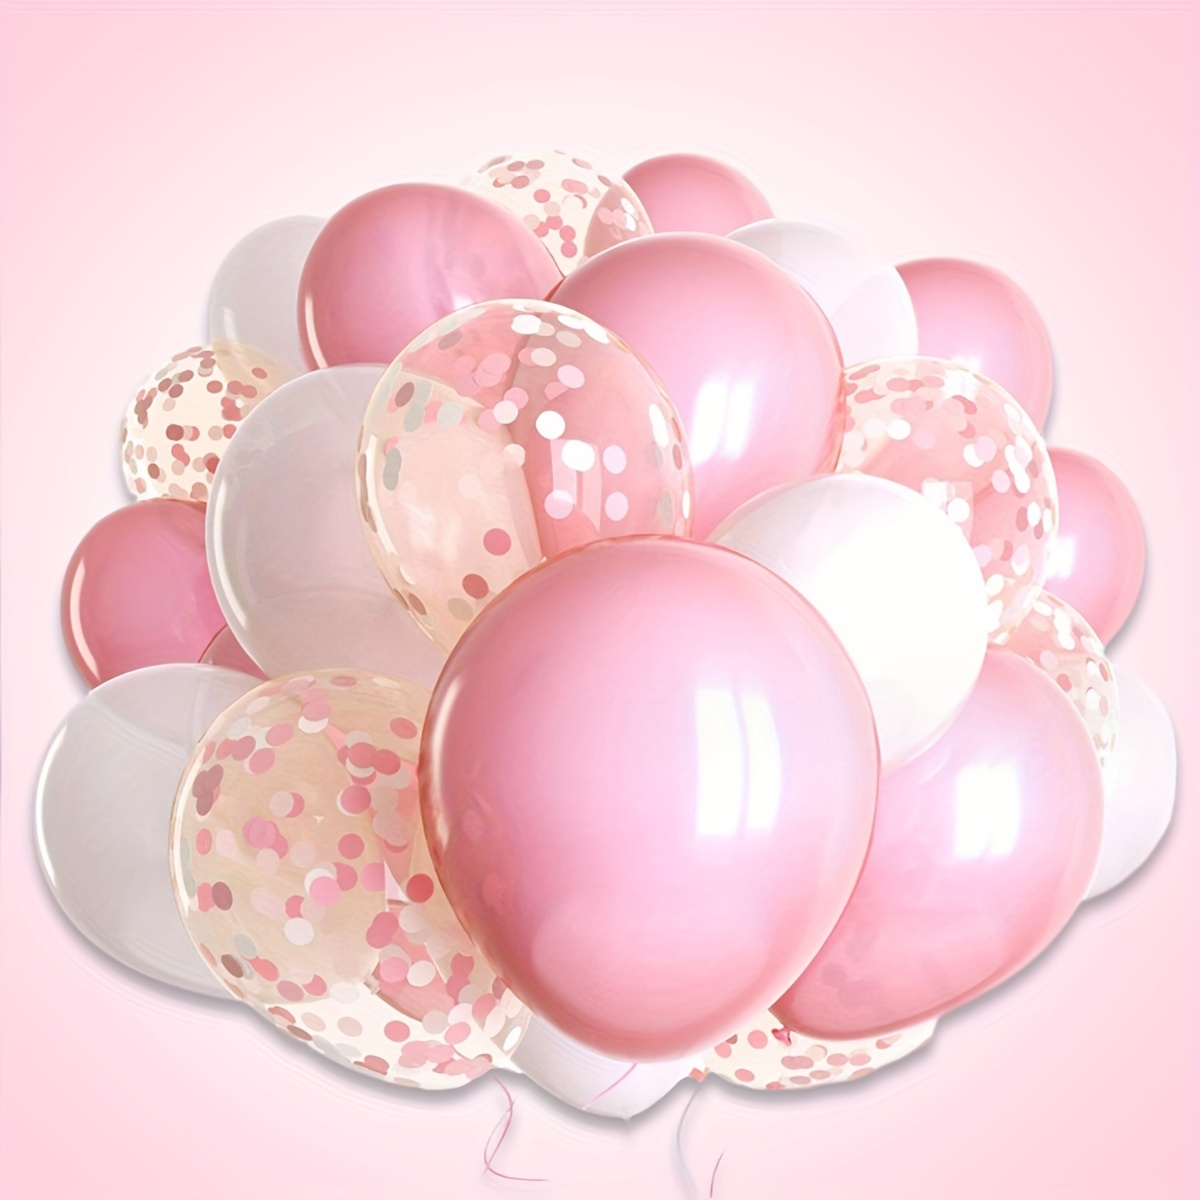 Arche de ballons géante : 200 ballons dégradé mauve et rose - décoration  mariage, anniversaire, baby shower